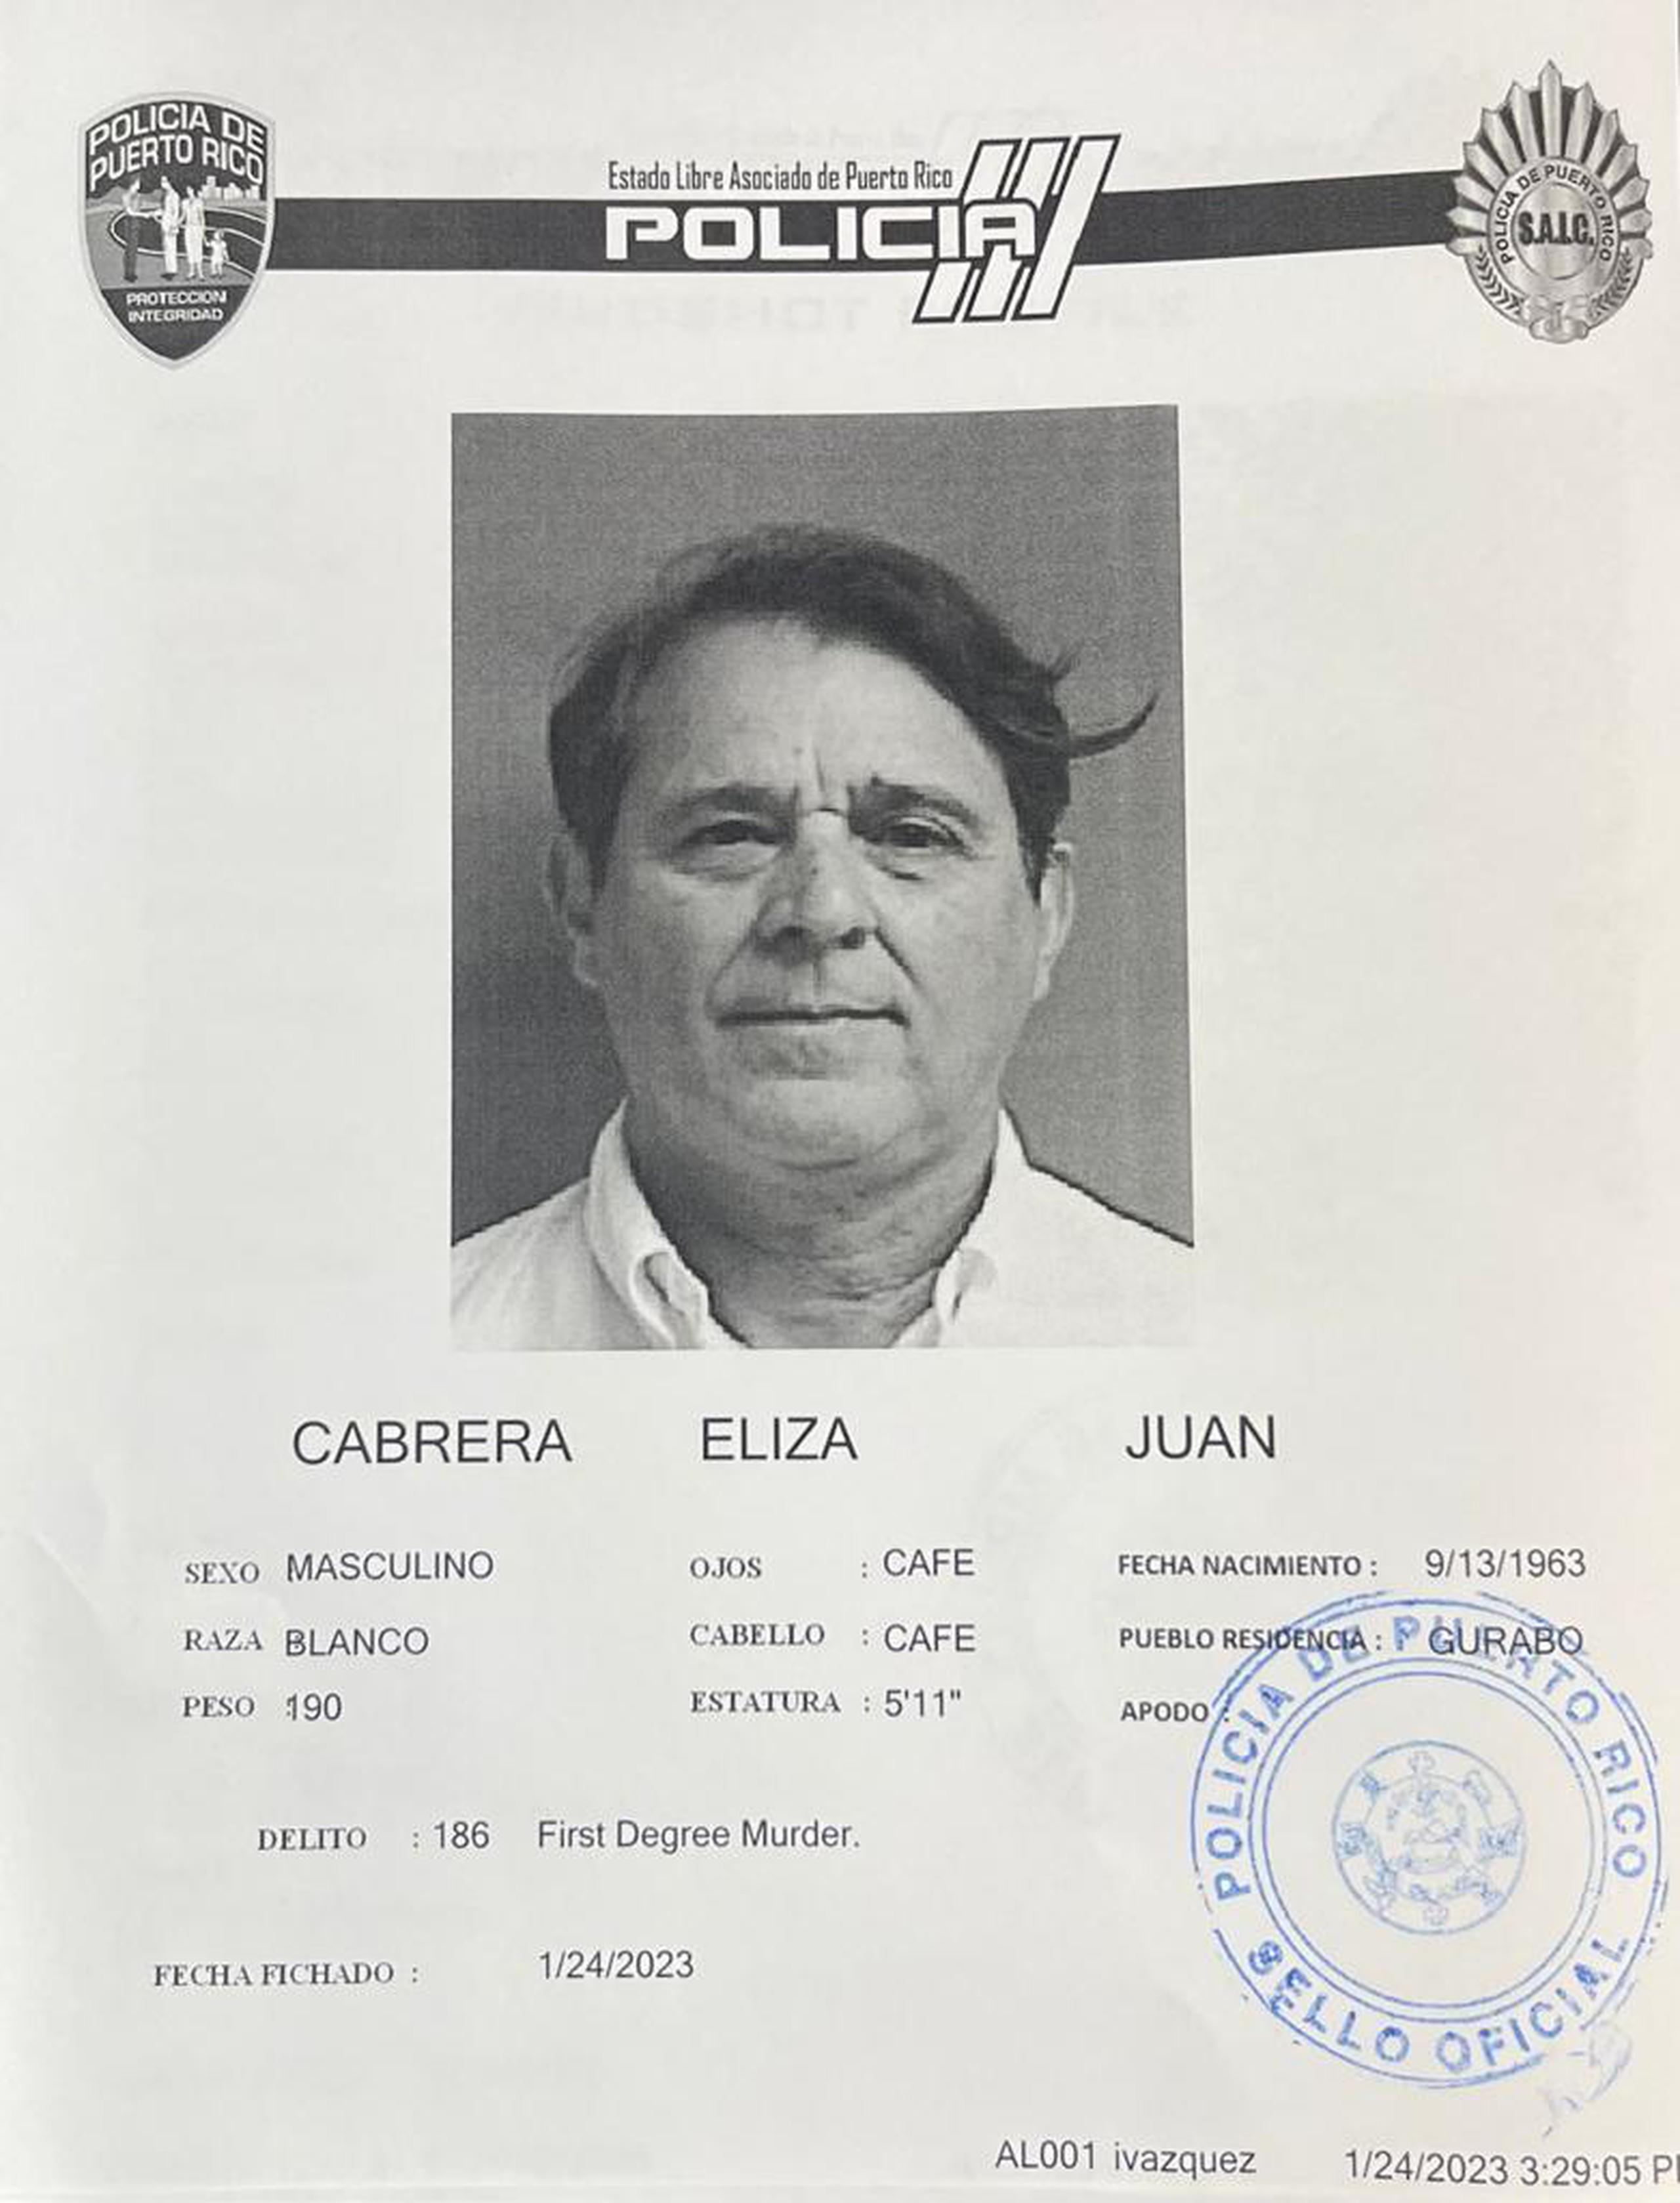 Juan Ángel Cabrera Eliza fue acusado por el delito de asesinato en primer grado de su pareja, Tania Ríos González, por hechos ocurridos el 20 de noviembre de 2020.